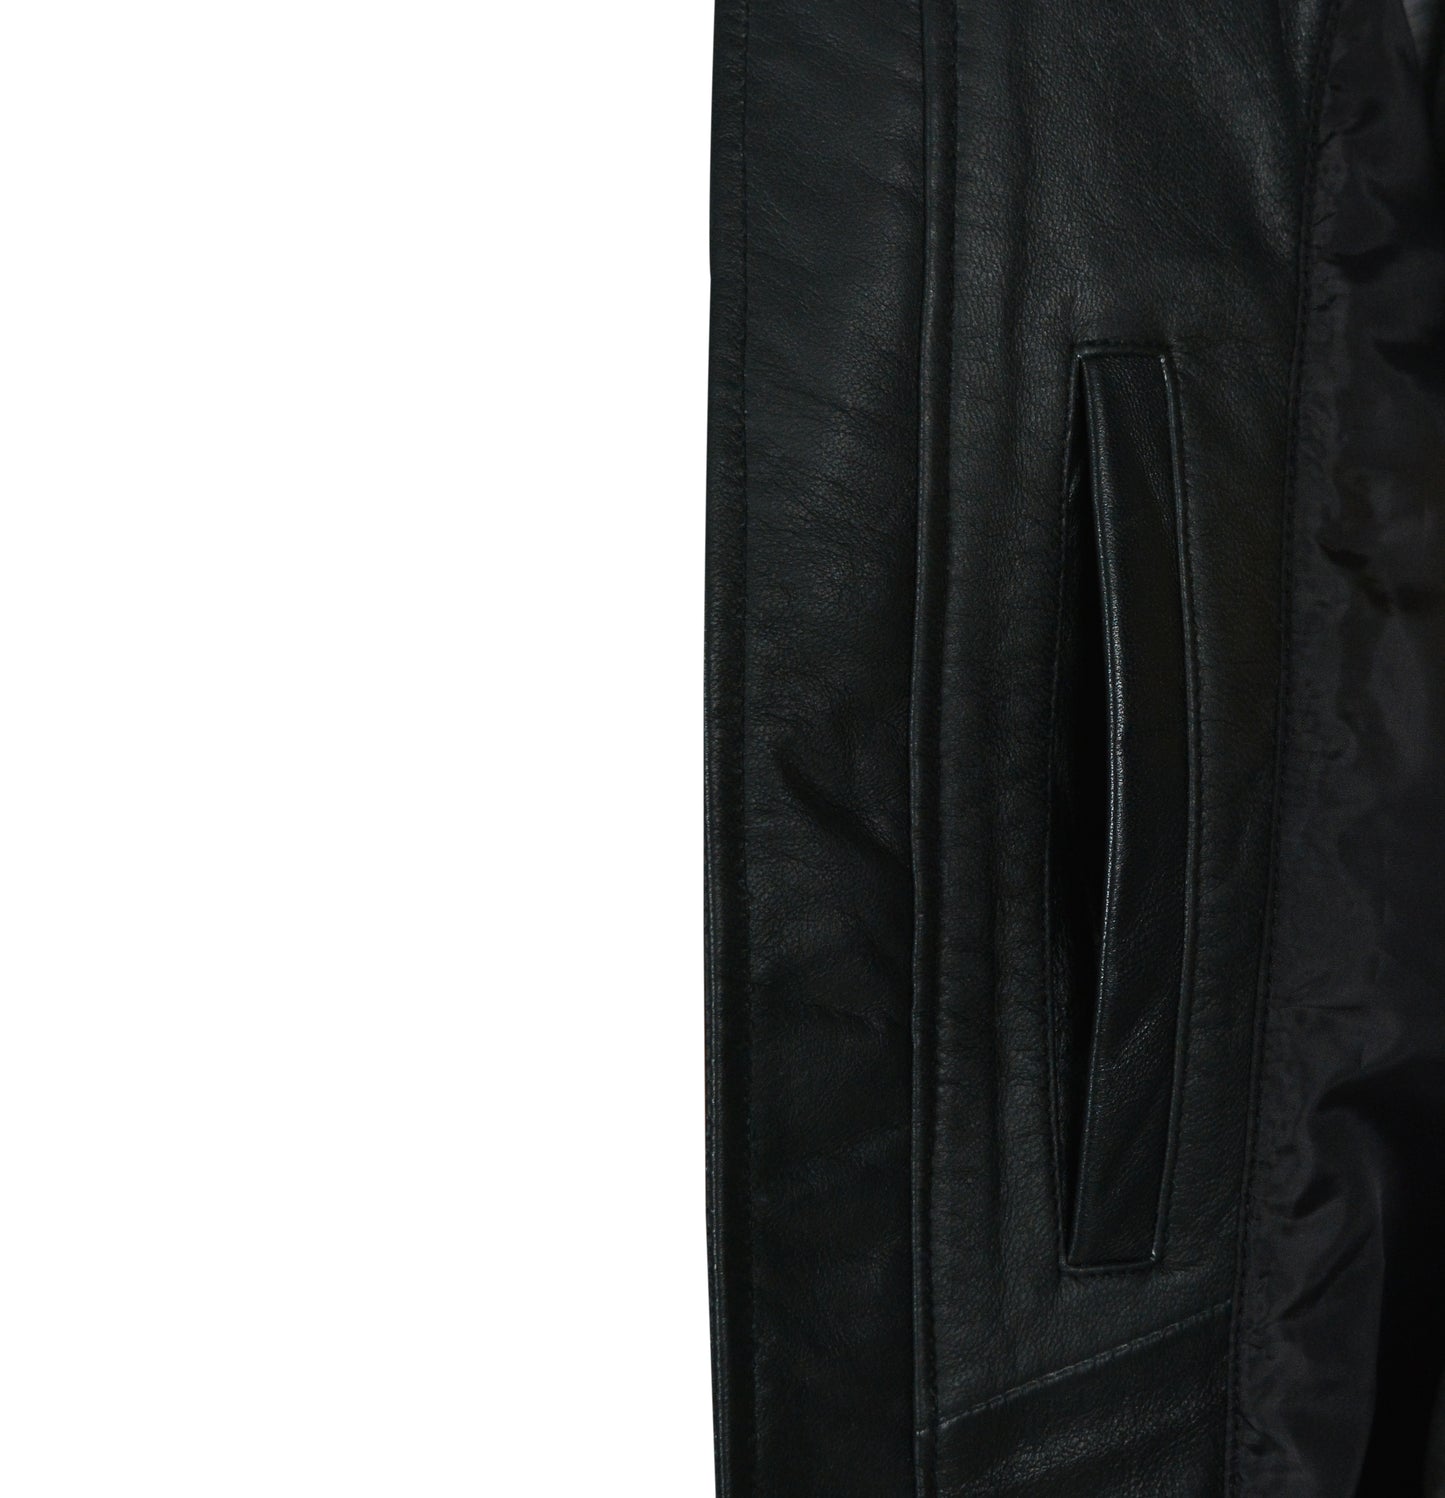 Pelle Pelle Vintage Black Leather Jacket